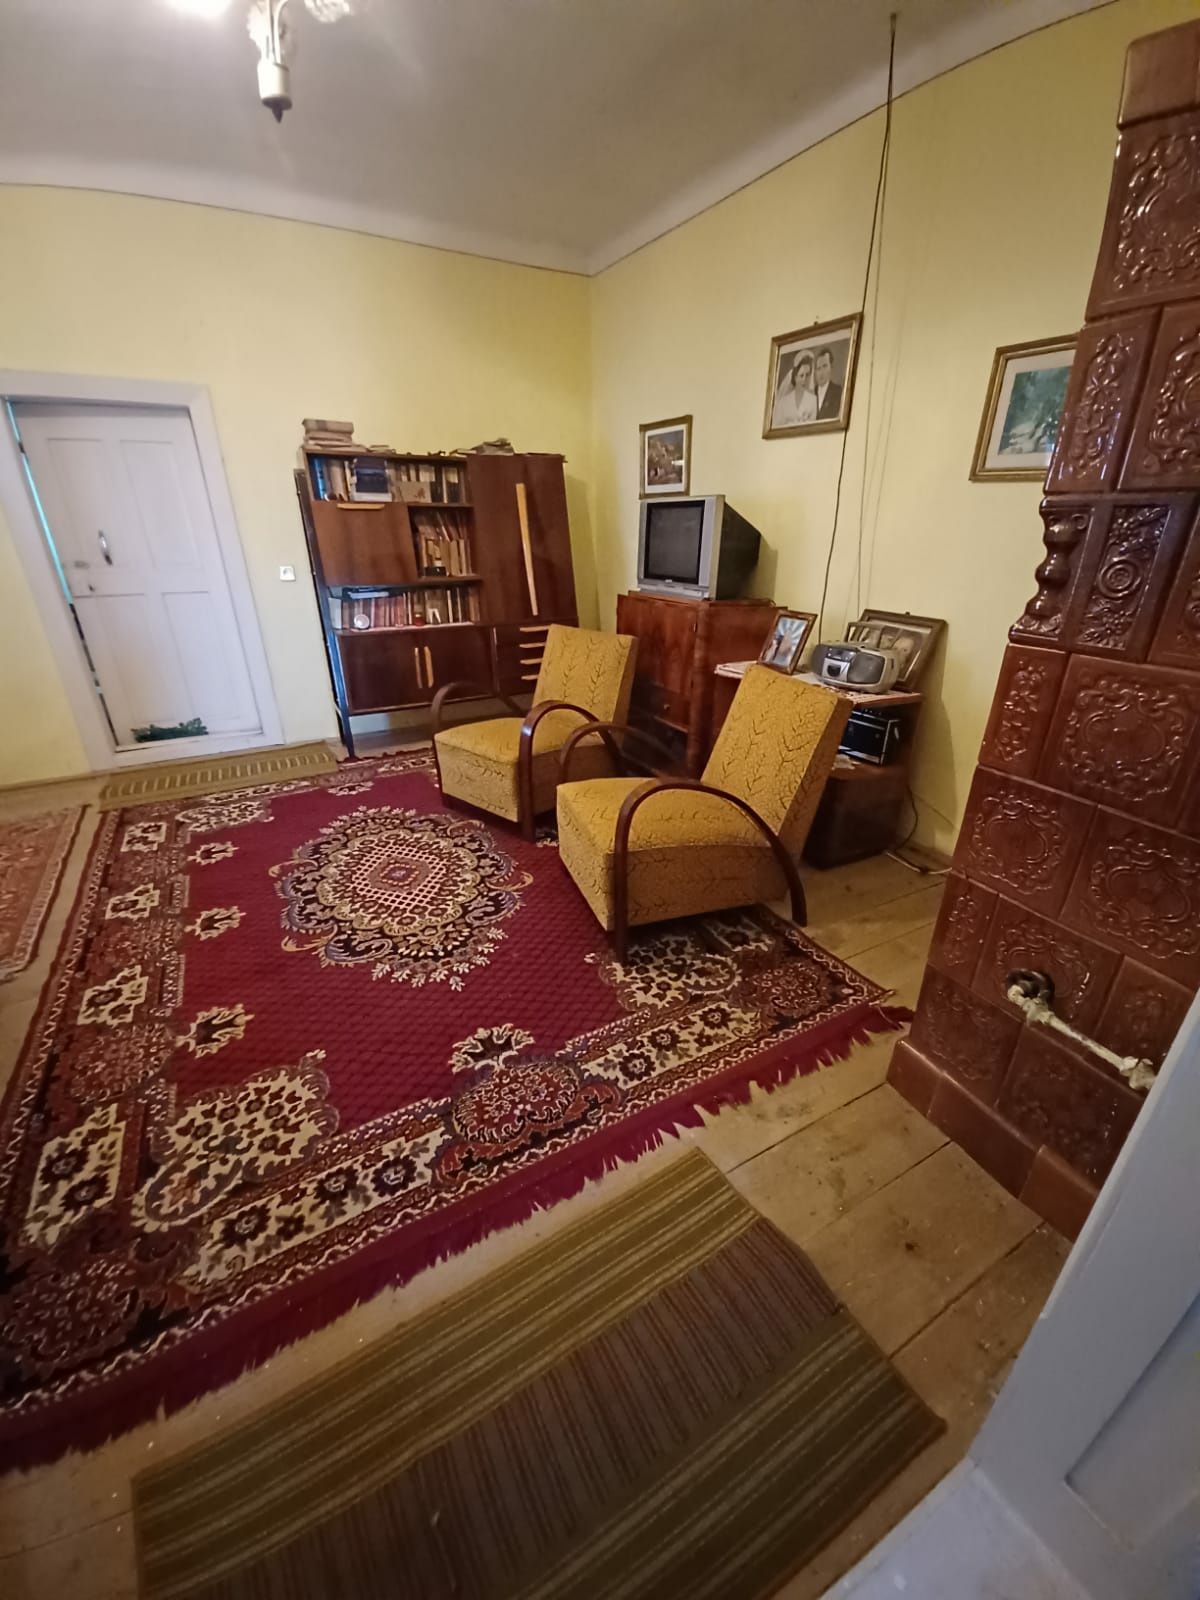 De vânzare o casă familială în localitatea Ilieni ( com.Gh.-Doja)